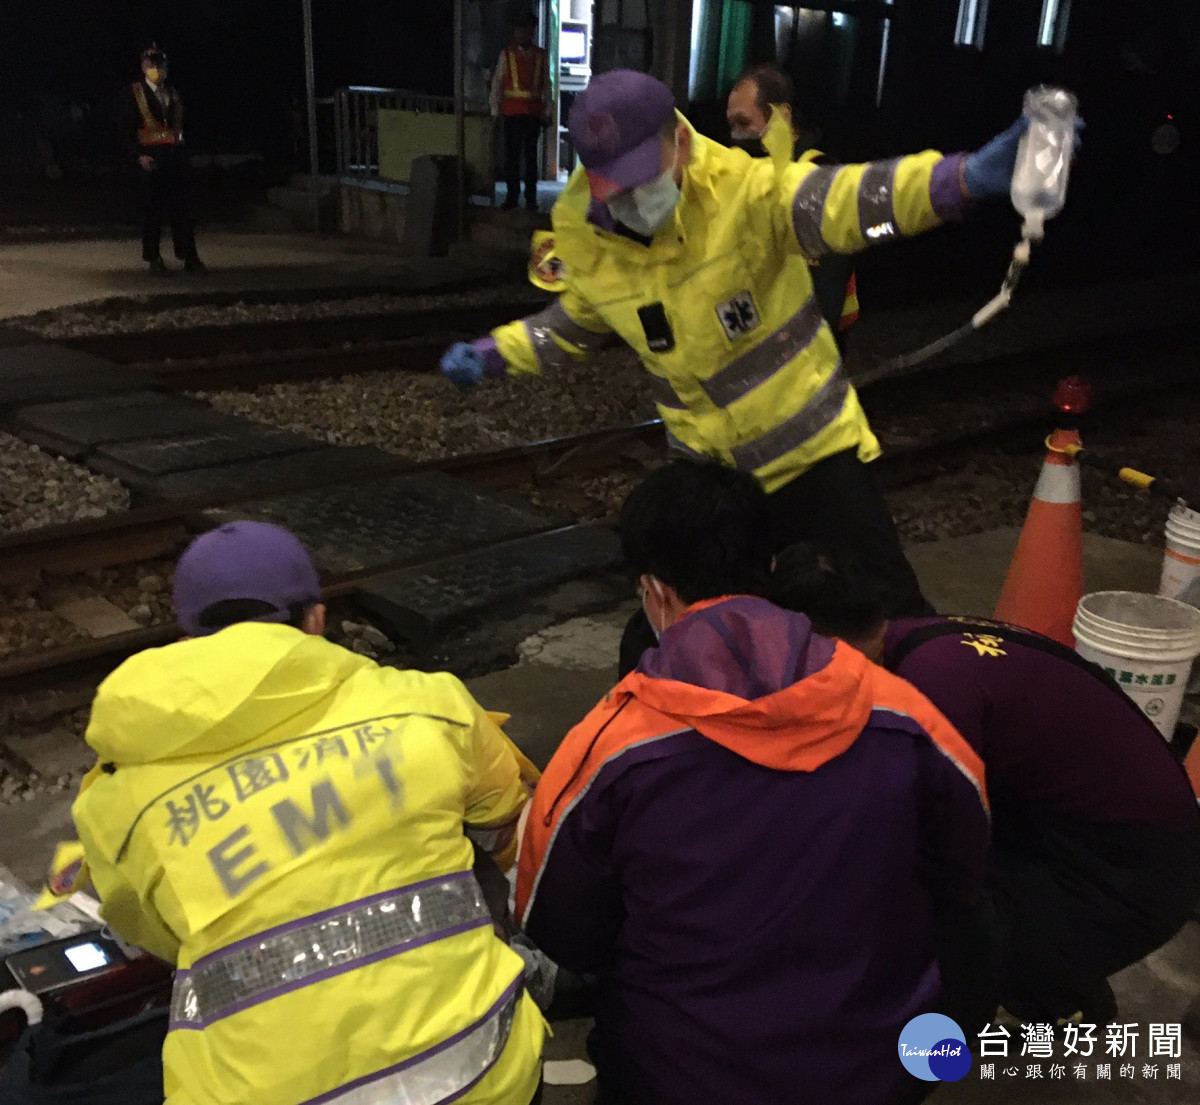 旅客突然身體不適倒下跌落軌道，富岡消防隊與鐵道站務人員協力救回寶貴生命<br />
<br />
